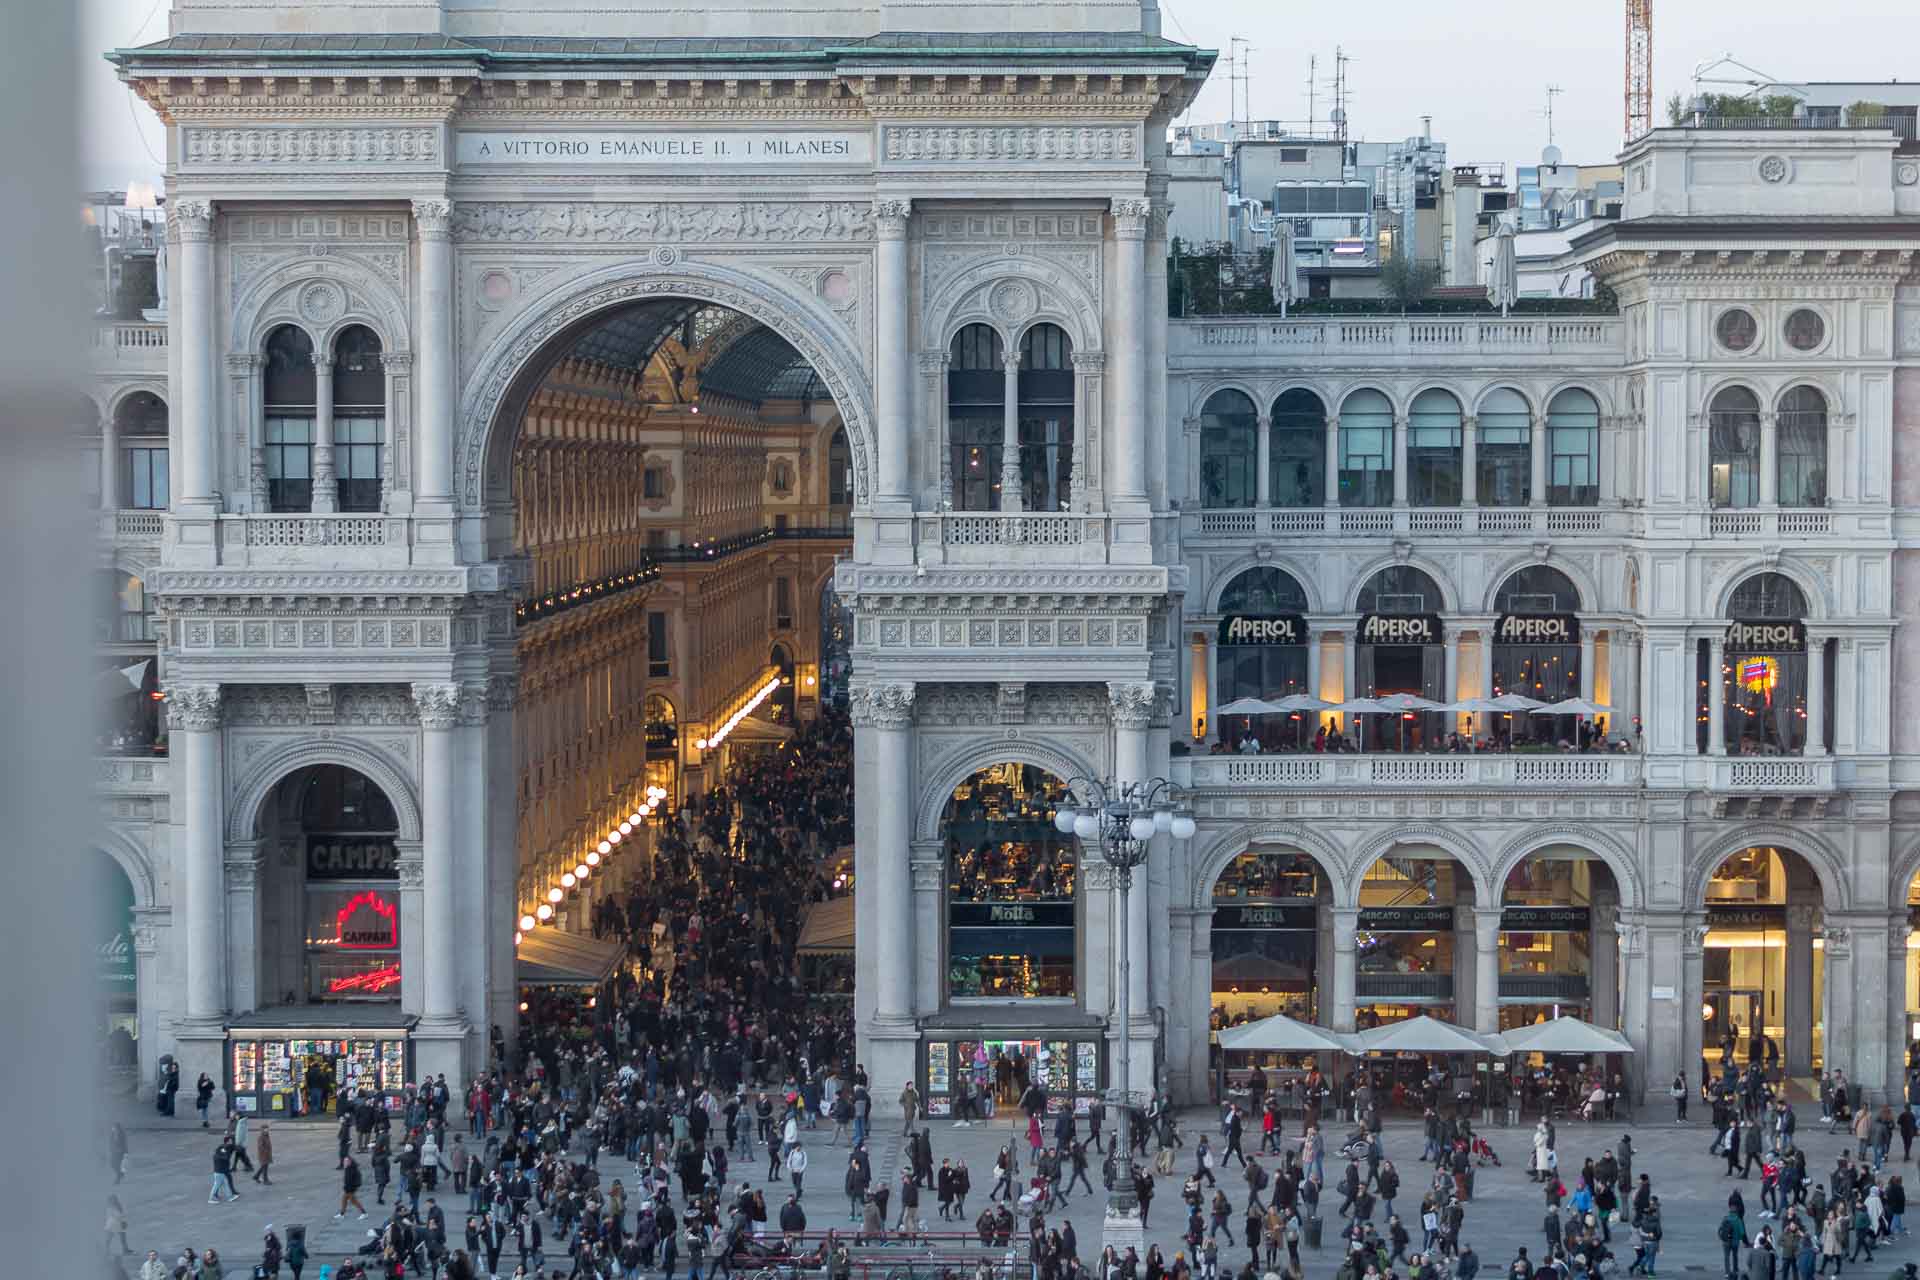 Vista da galeria Vittorio Emanuele II cheia de pessoas e uma entrada enorme em arco